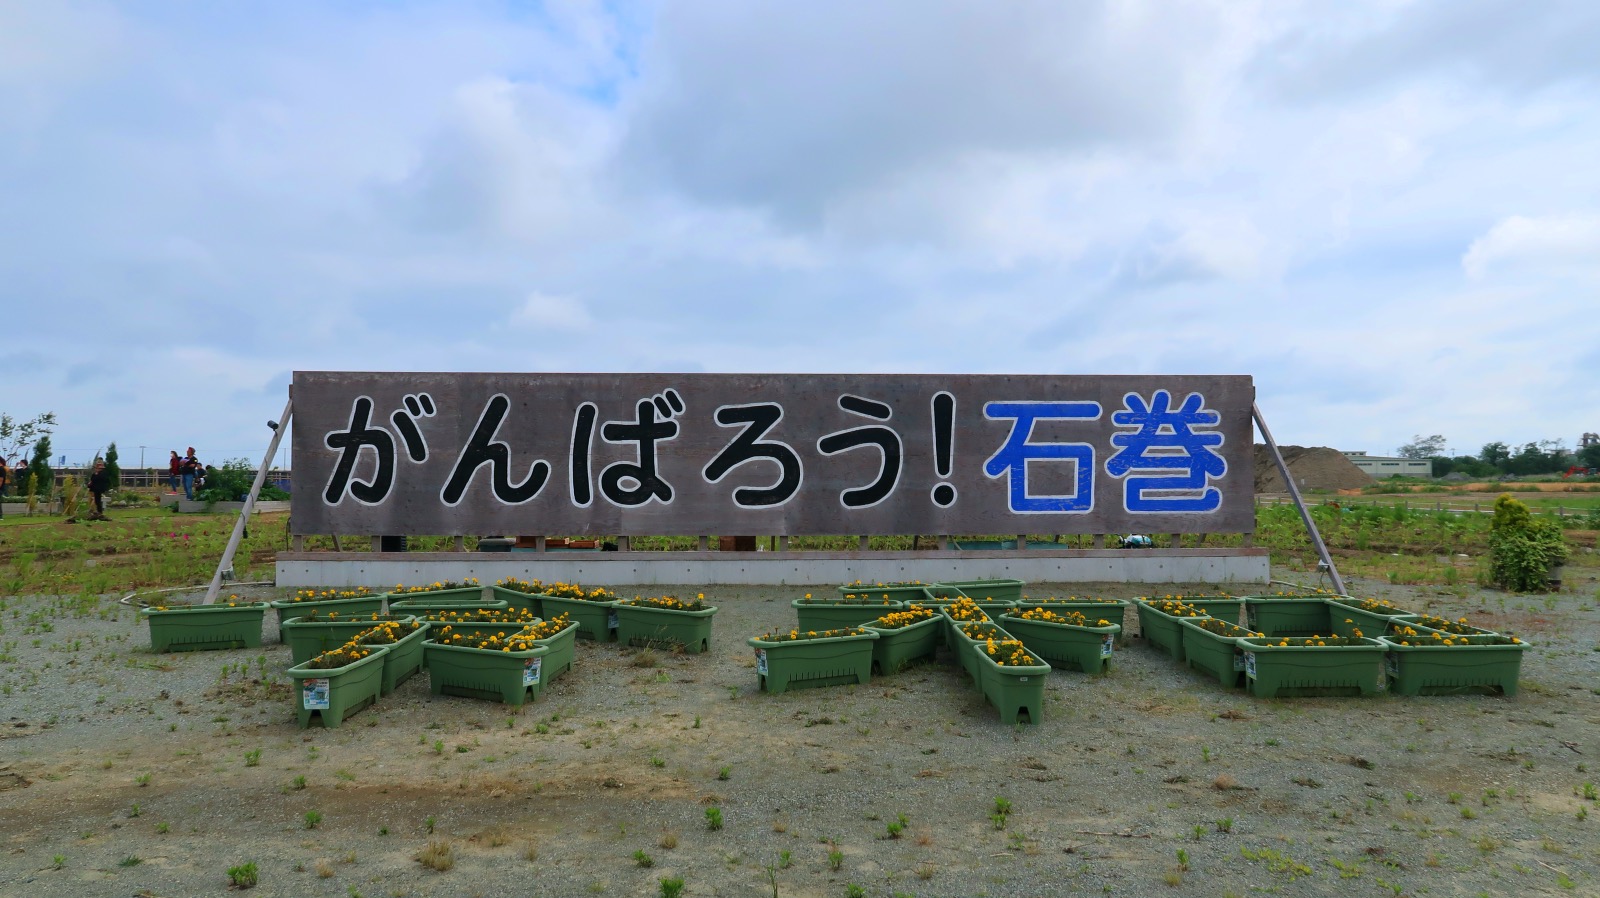 Ganbarō, Ishinomaki: Die Gedenktafel im zerstörten Viertel Minamihama in Ishinomaki.